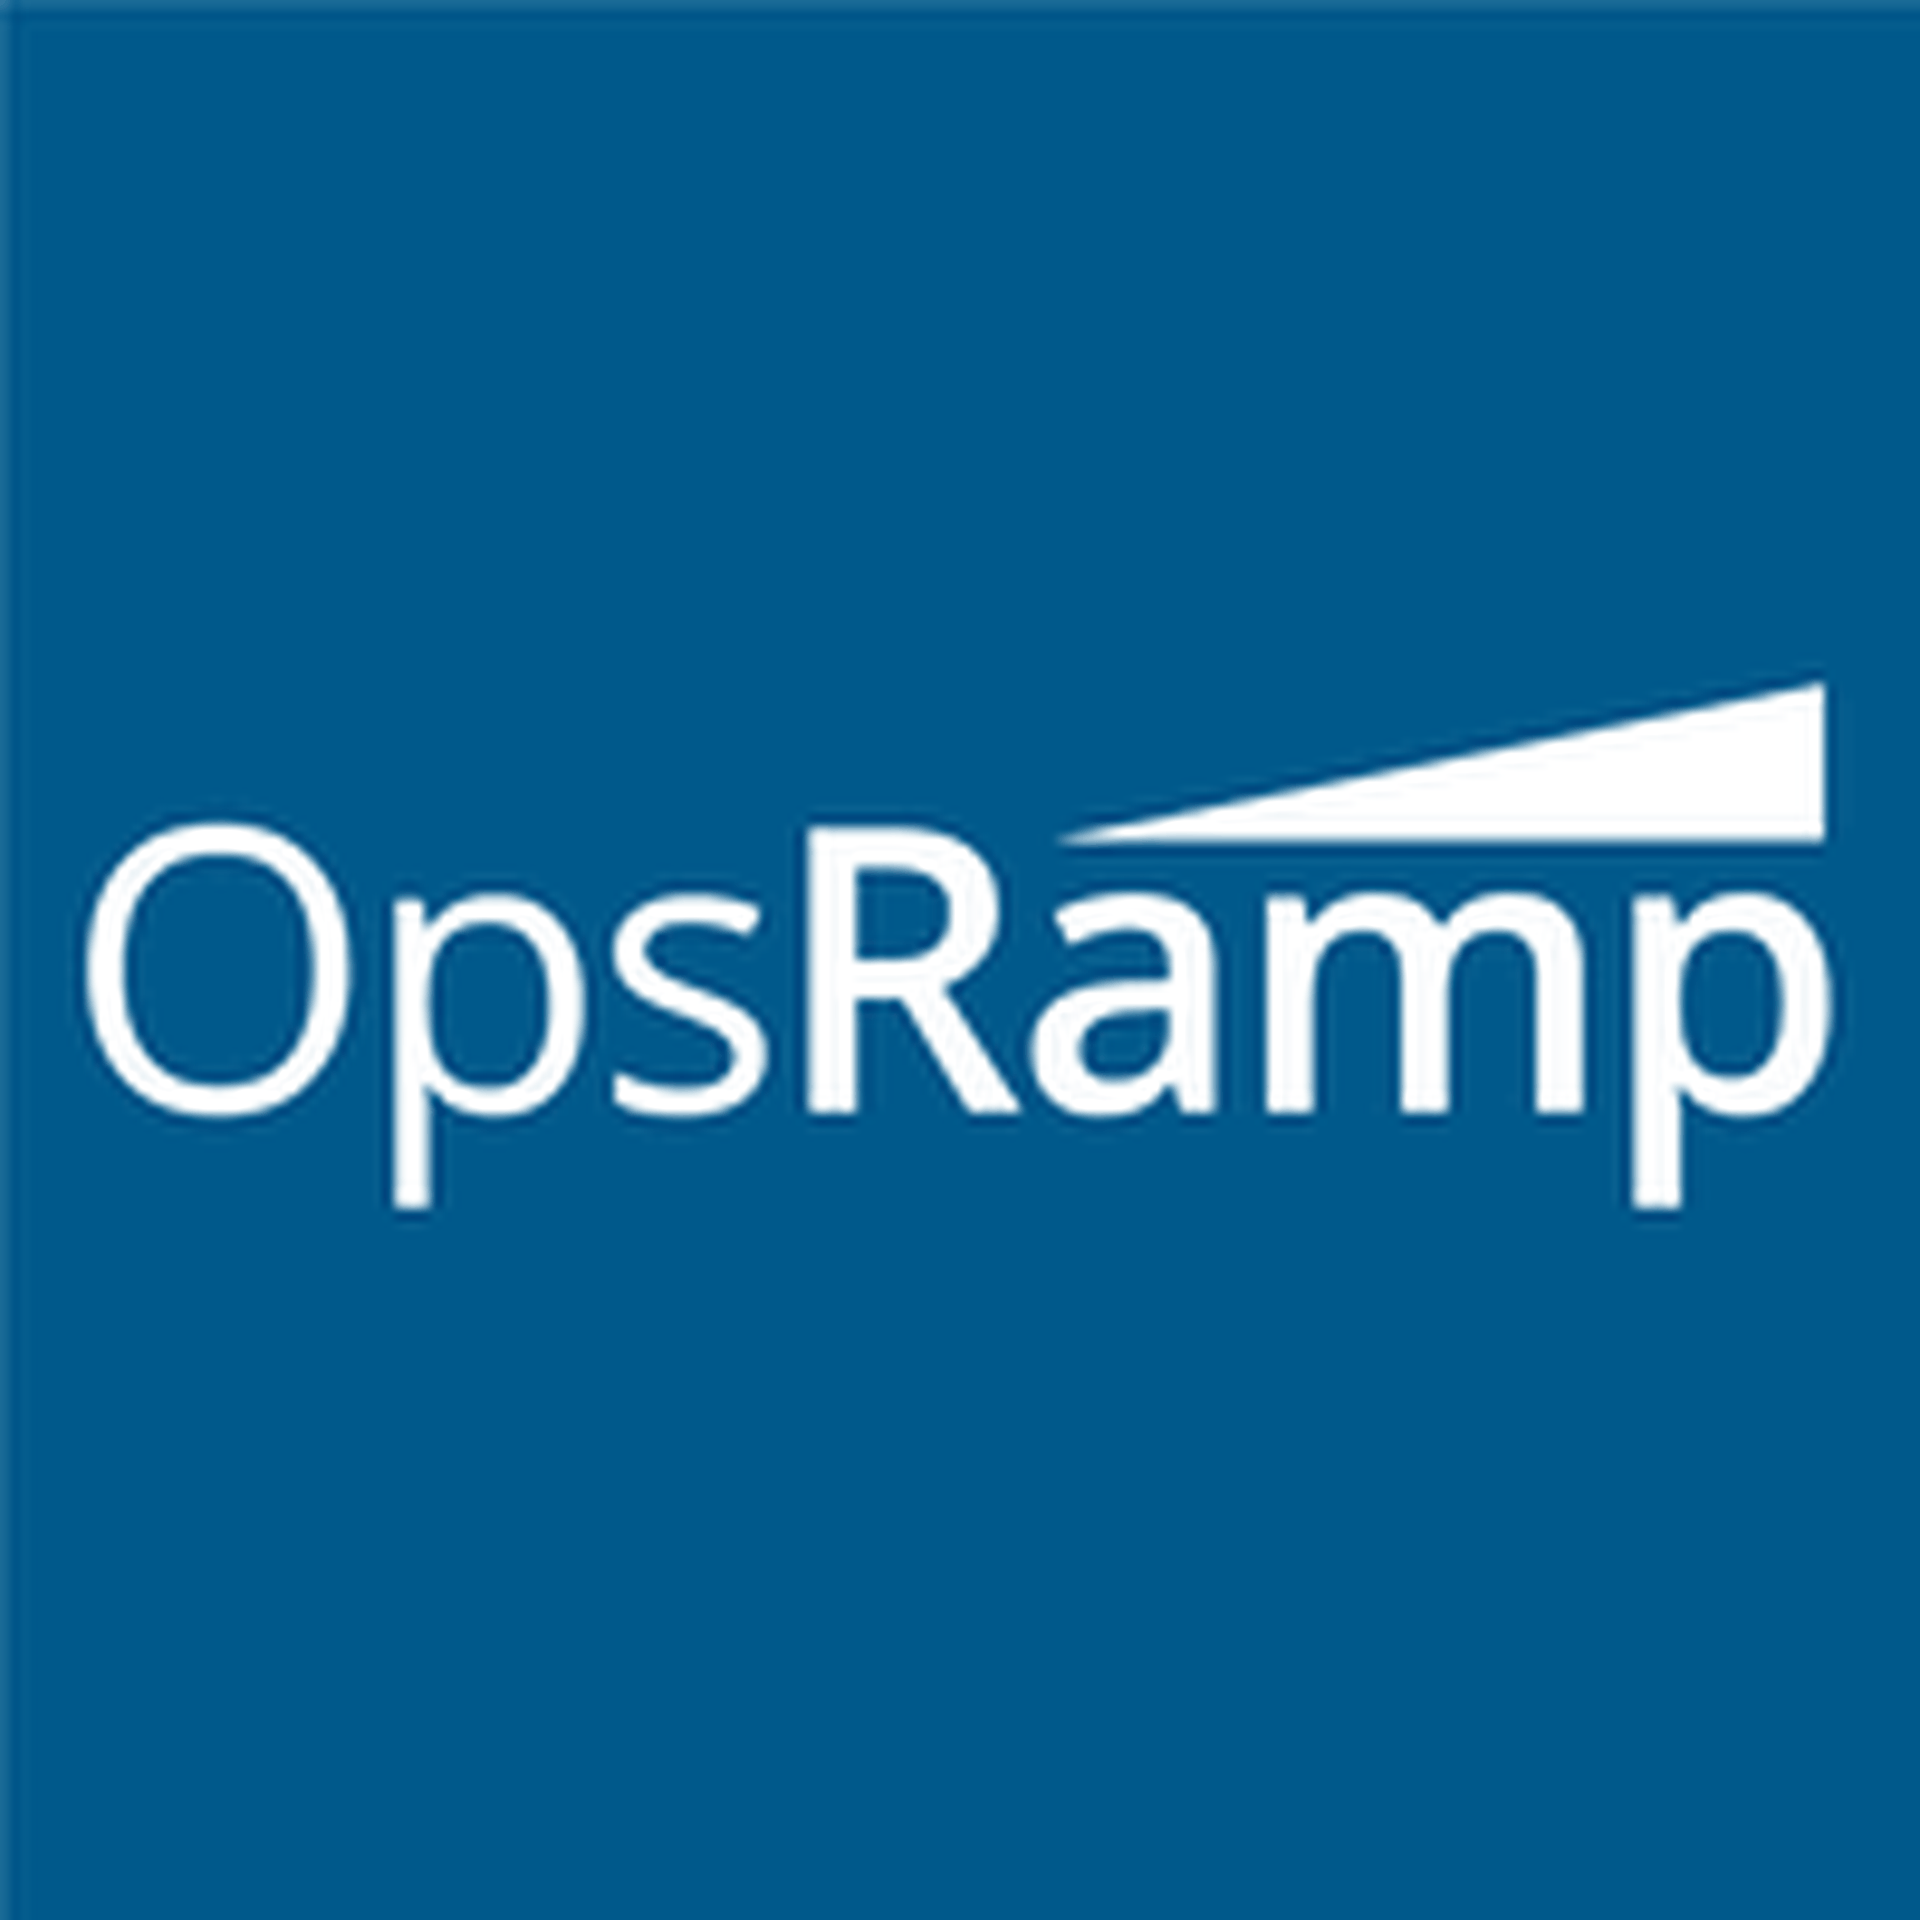 More Info: OpsRamp Partner Program